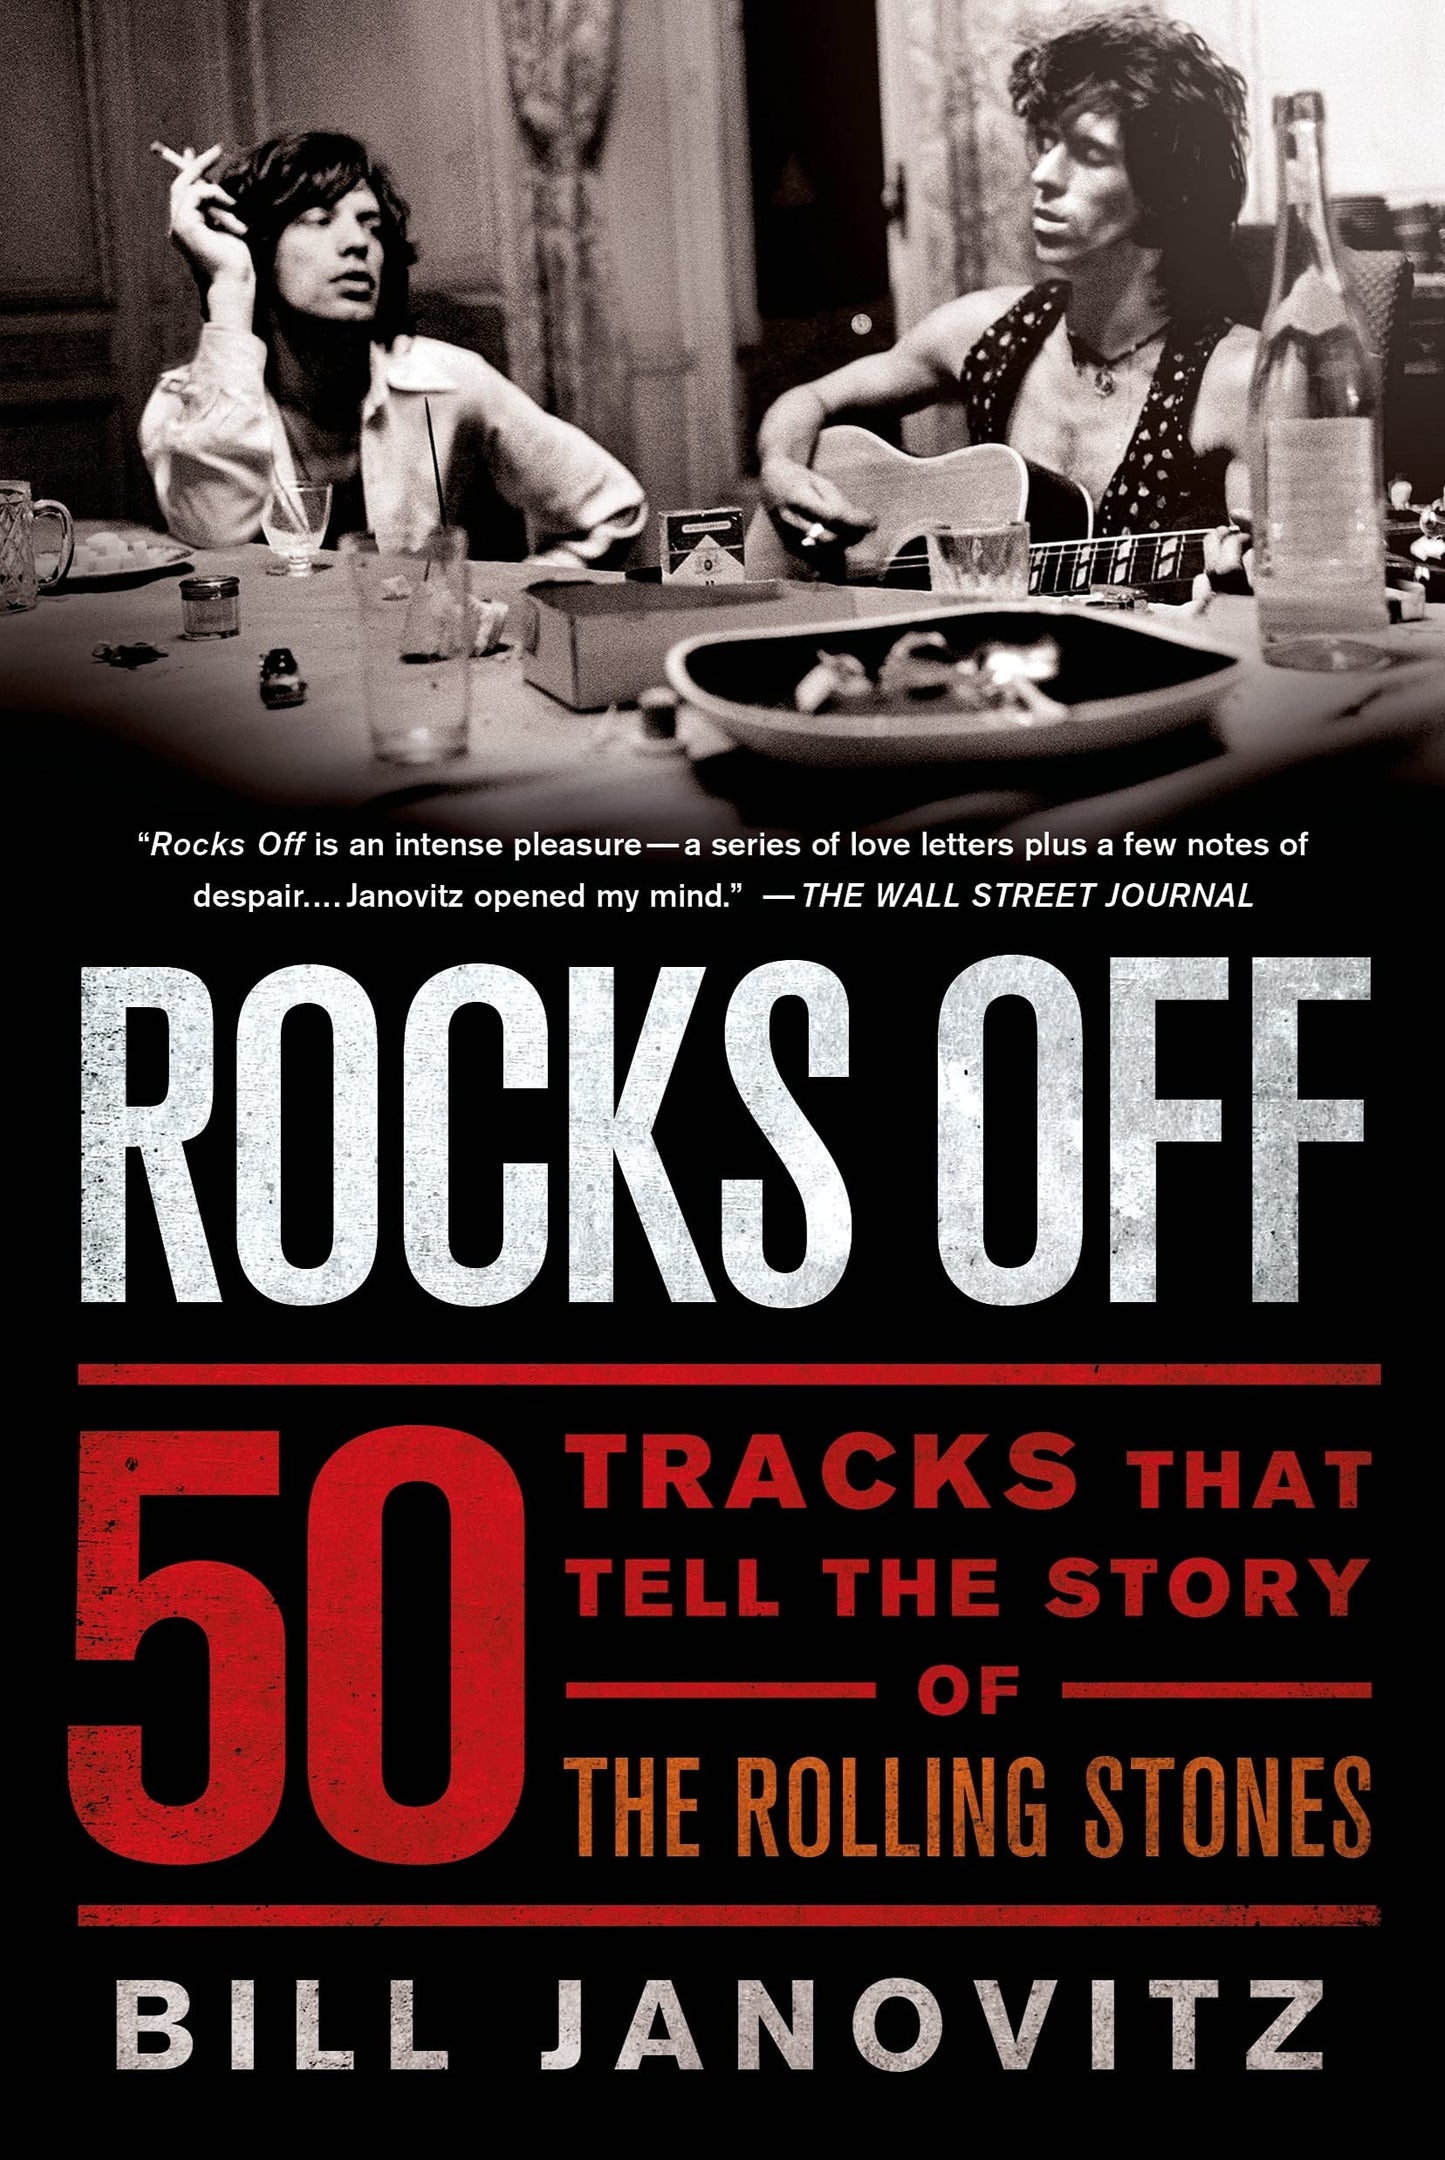 THE ROLLING STONES - ROCKS OFF: 50 PISTAS QUE CUENTAN LA HISTORIA DE LOS ROLLING STONES - RÚSTICA - LIBRO